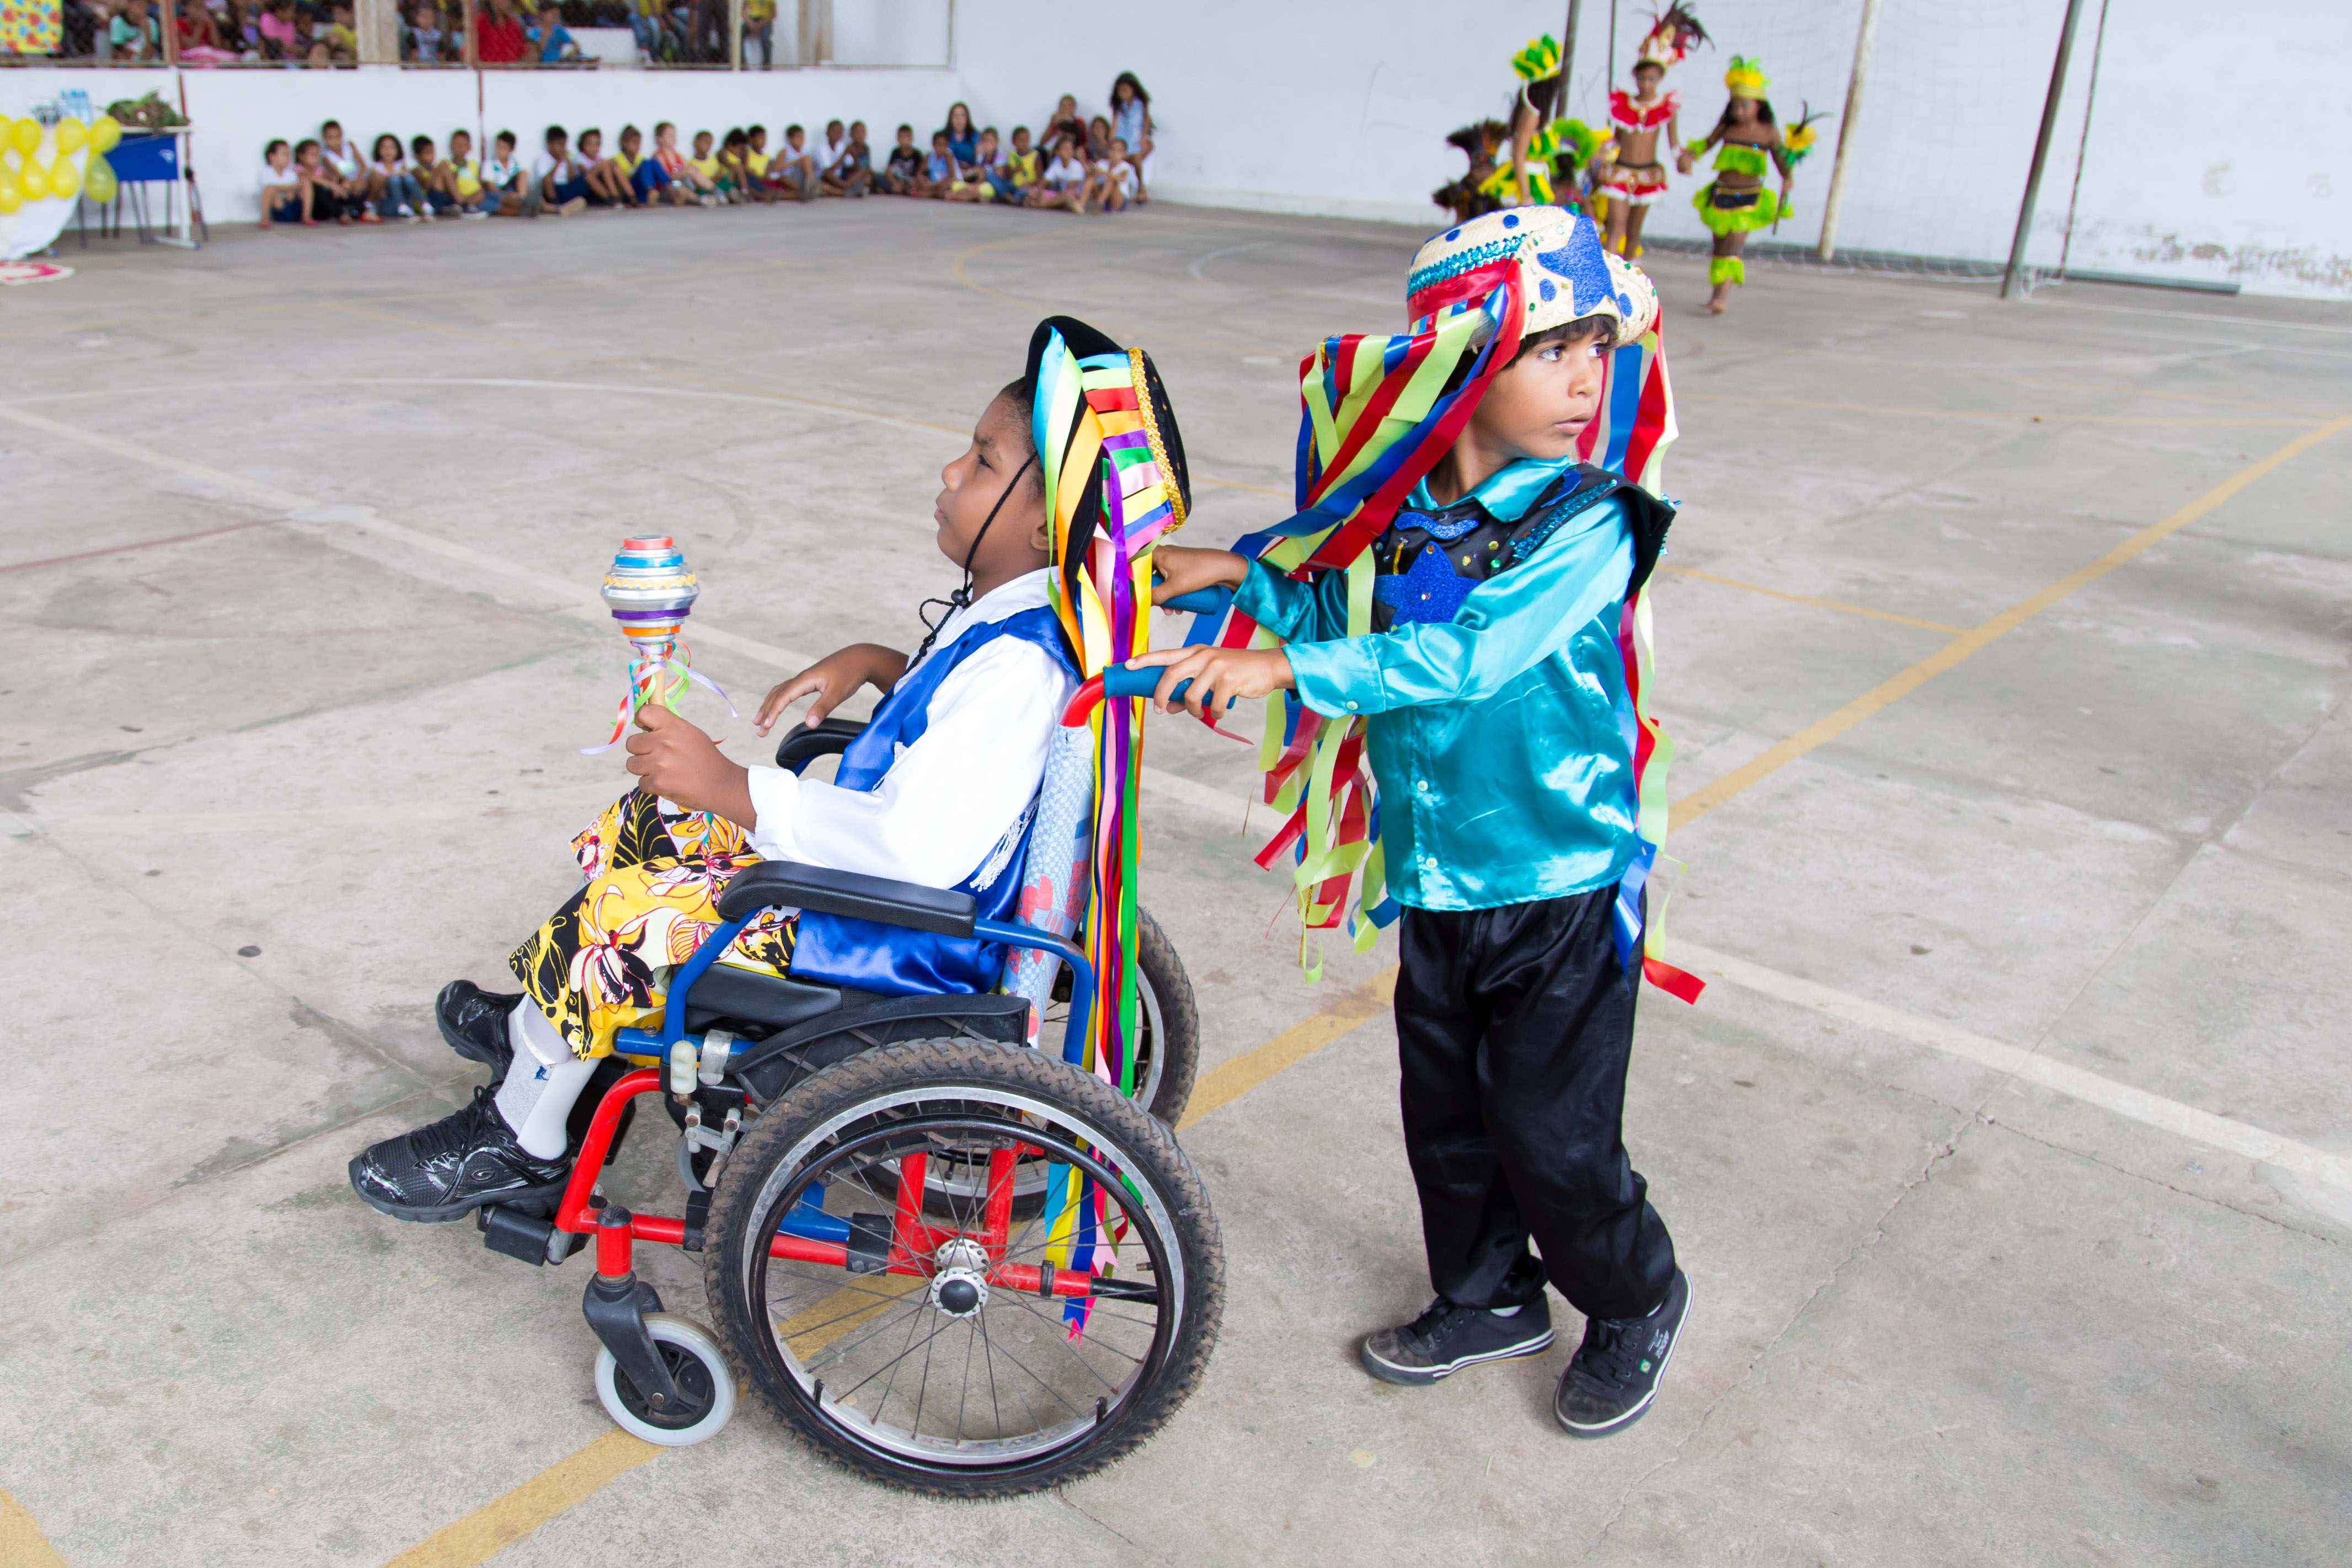 Dois garotos com roupas coloridas dançam. Um deles usa uma cadeira de rodas e o outro o empurra.